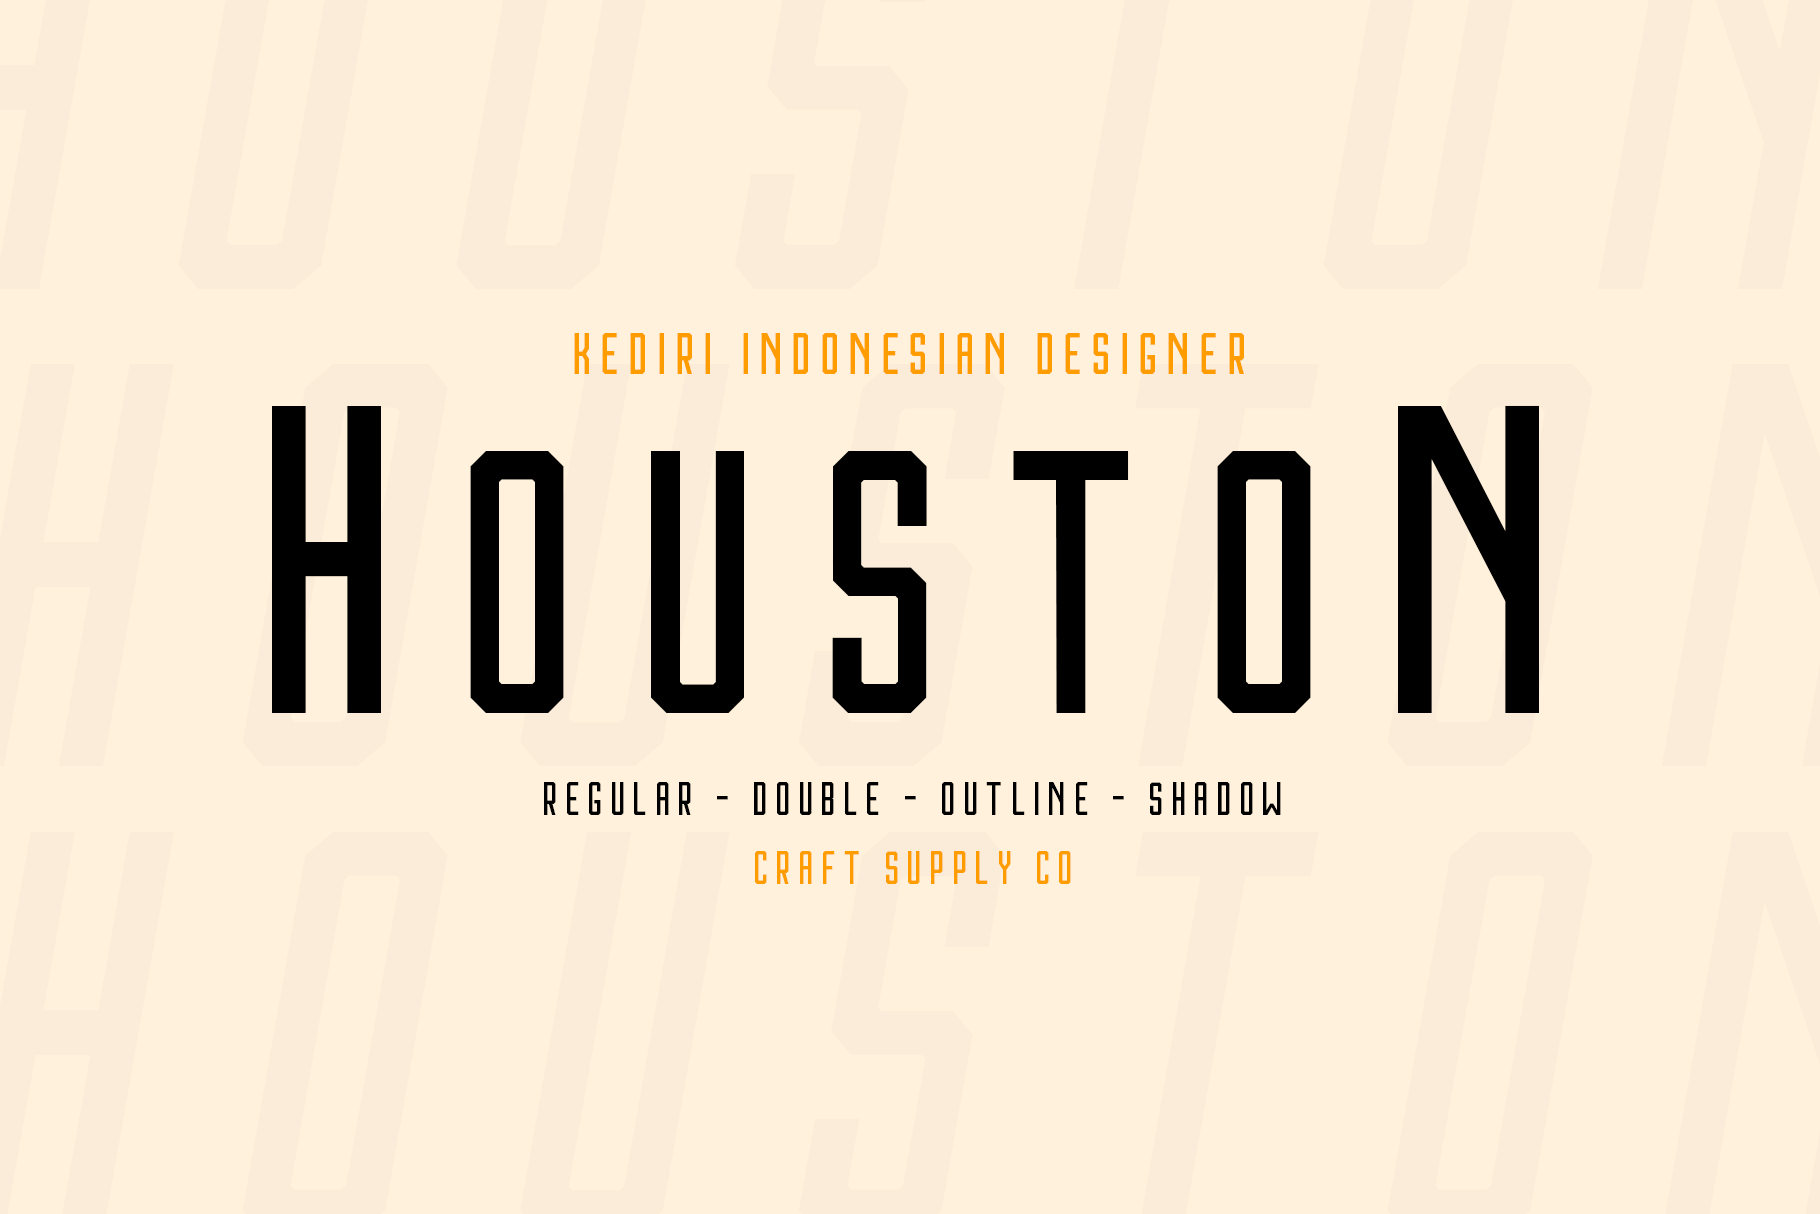 Houston Free Font Family